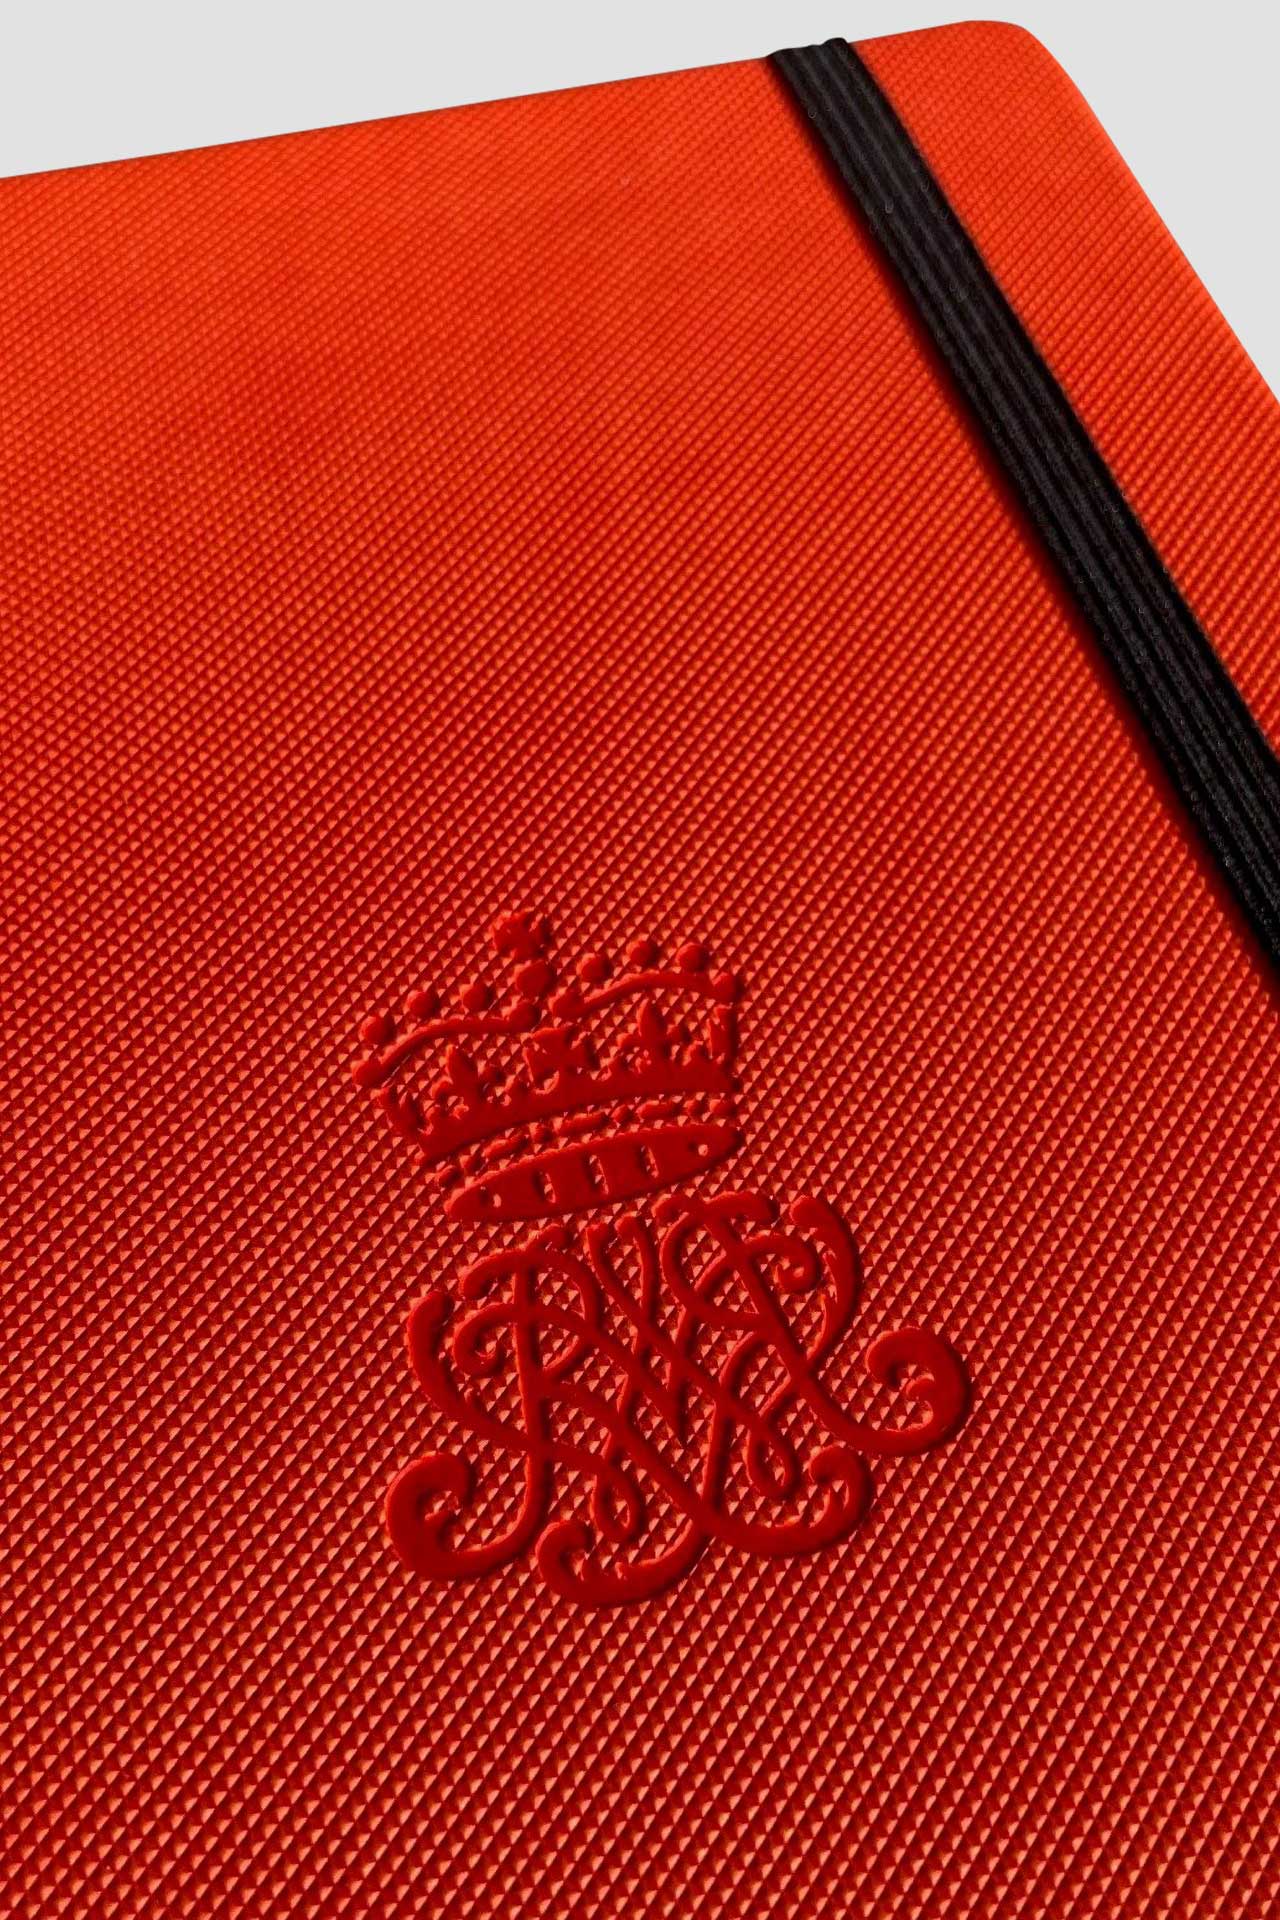 Mix&Match, type moderno rood notitieboek met zwart leeslint, logo in blinddruk